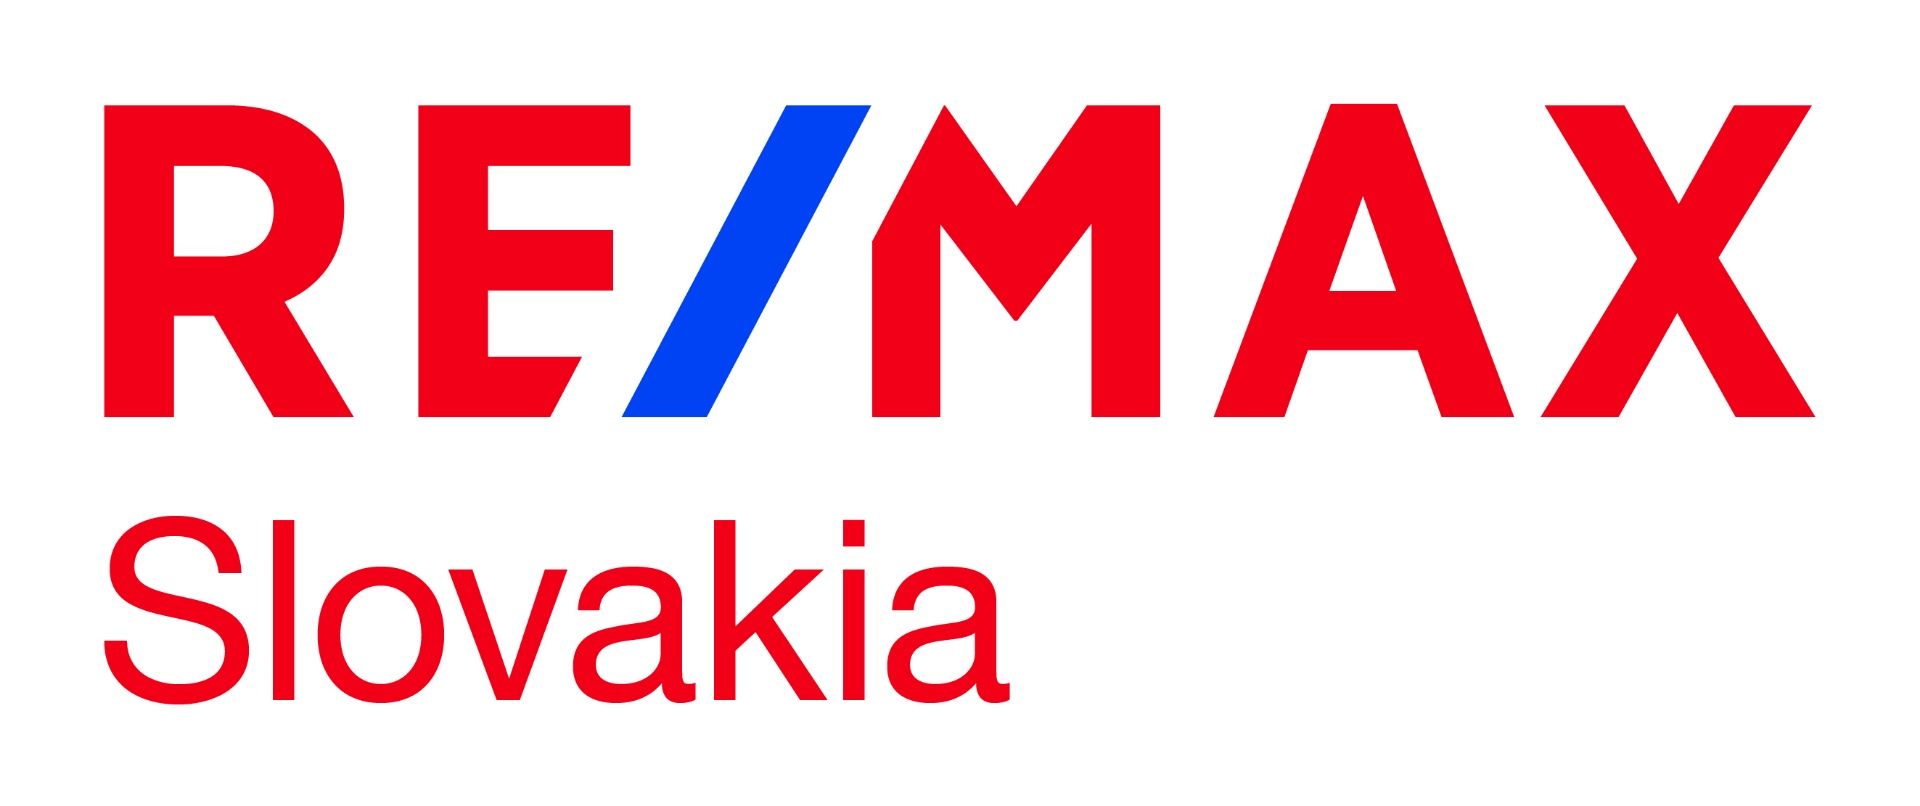 RE/MAX Slovakia